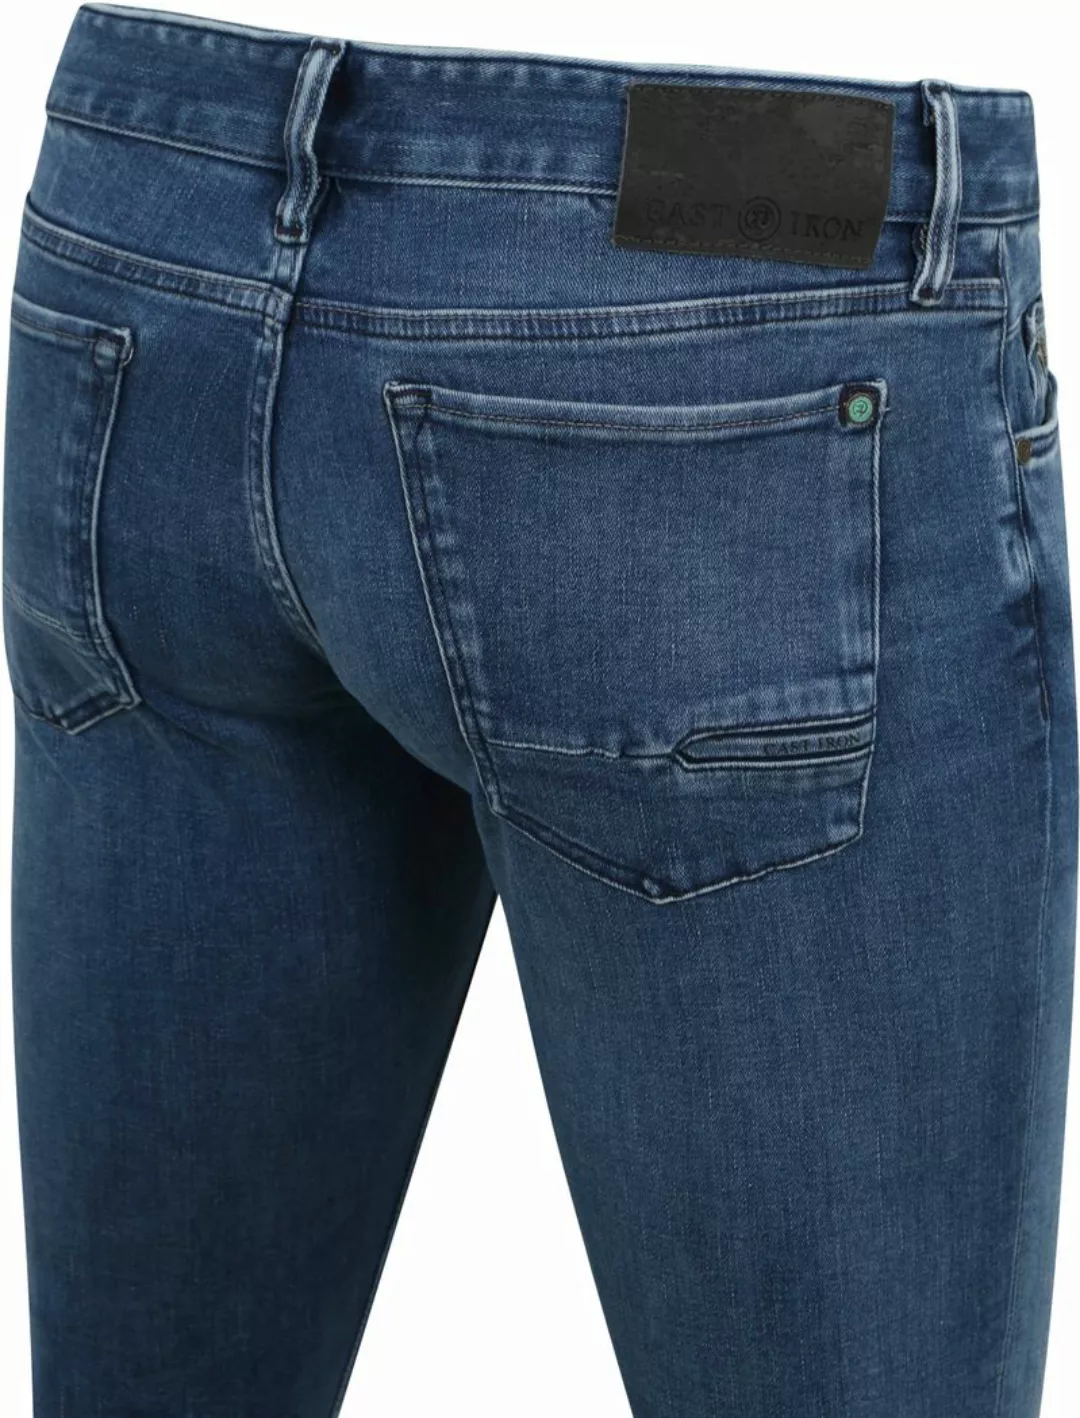 Cast Iron Riser Jeans Blau IIW - Größe W 30 - L 32 günstig online kaufen